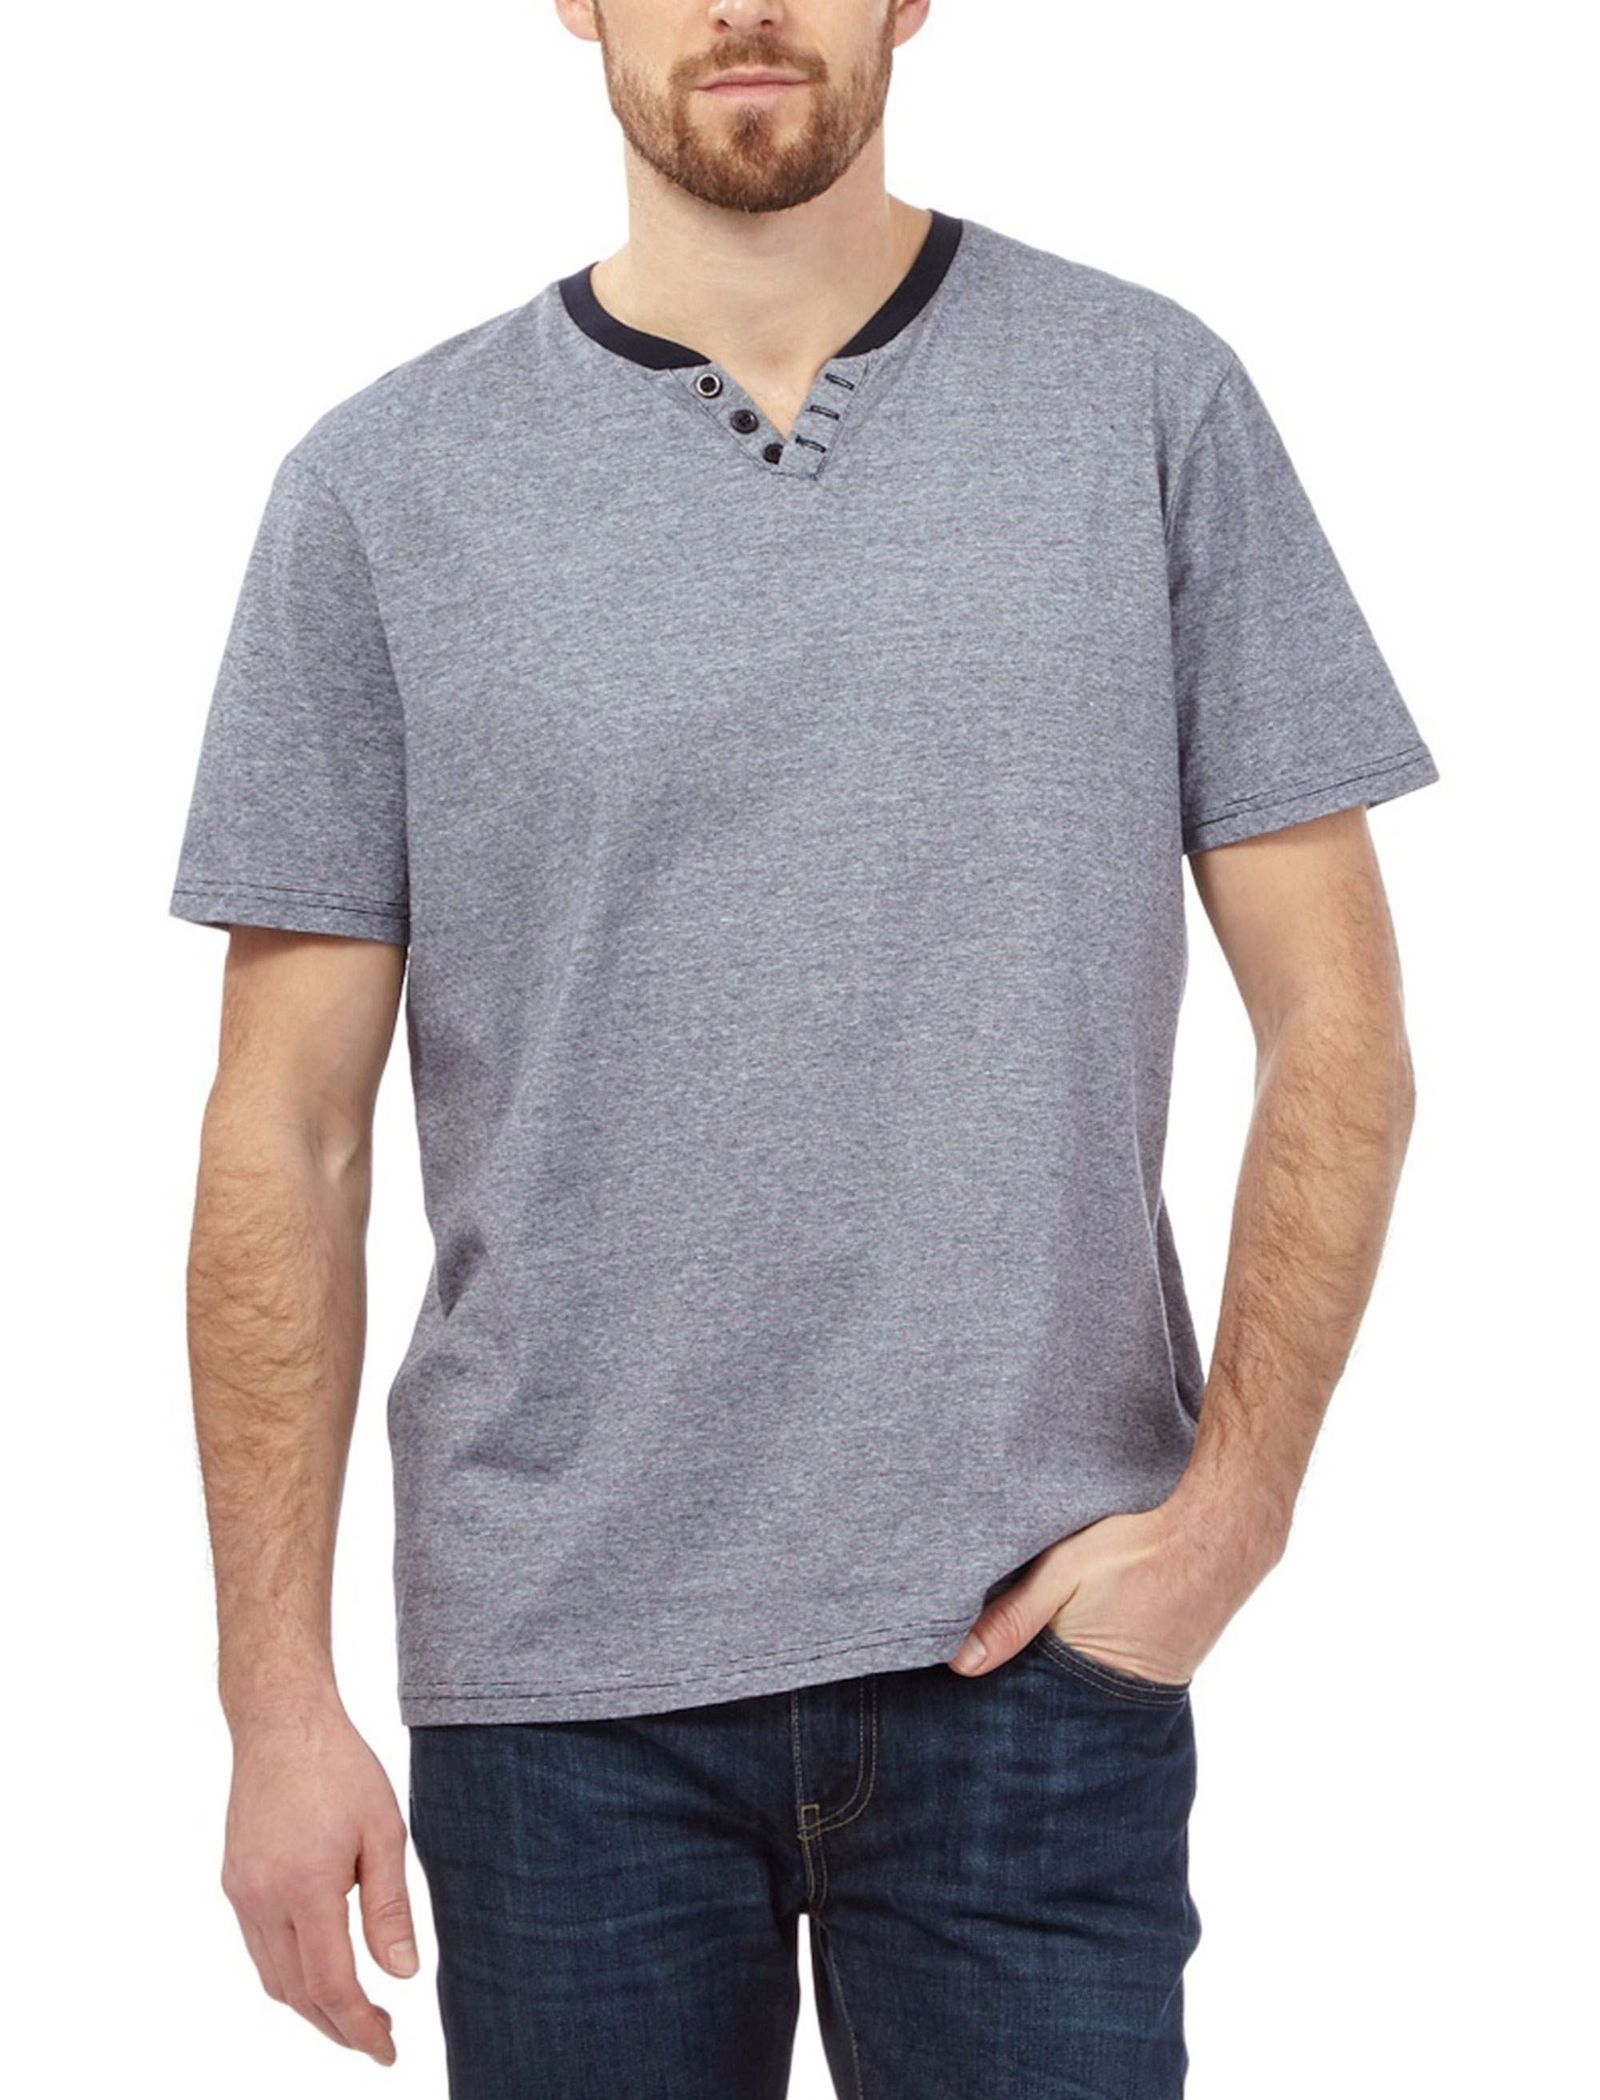 تی شرت نخی مردانه - مین نیو اینگلند - طوسي - 2